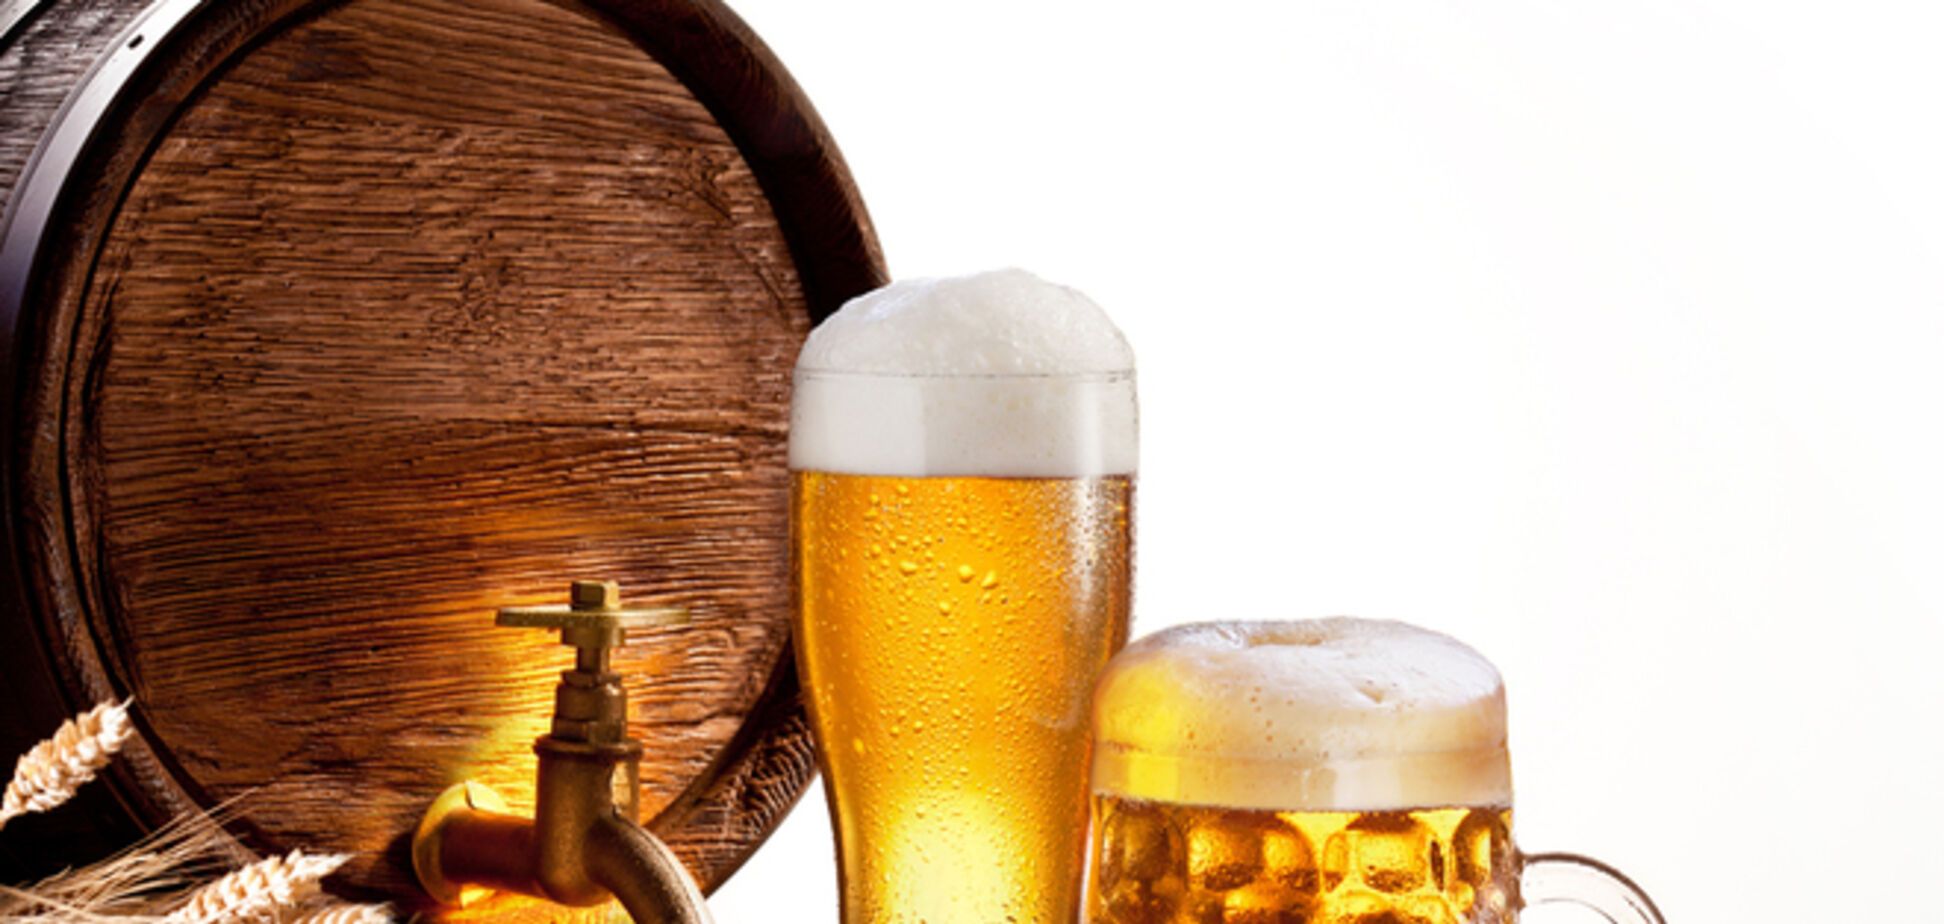 Украинцы стали меньше пить пиво